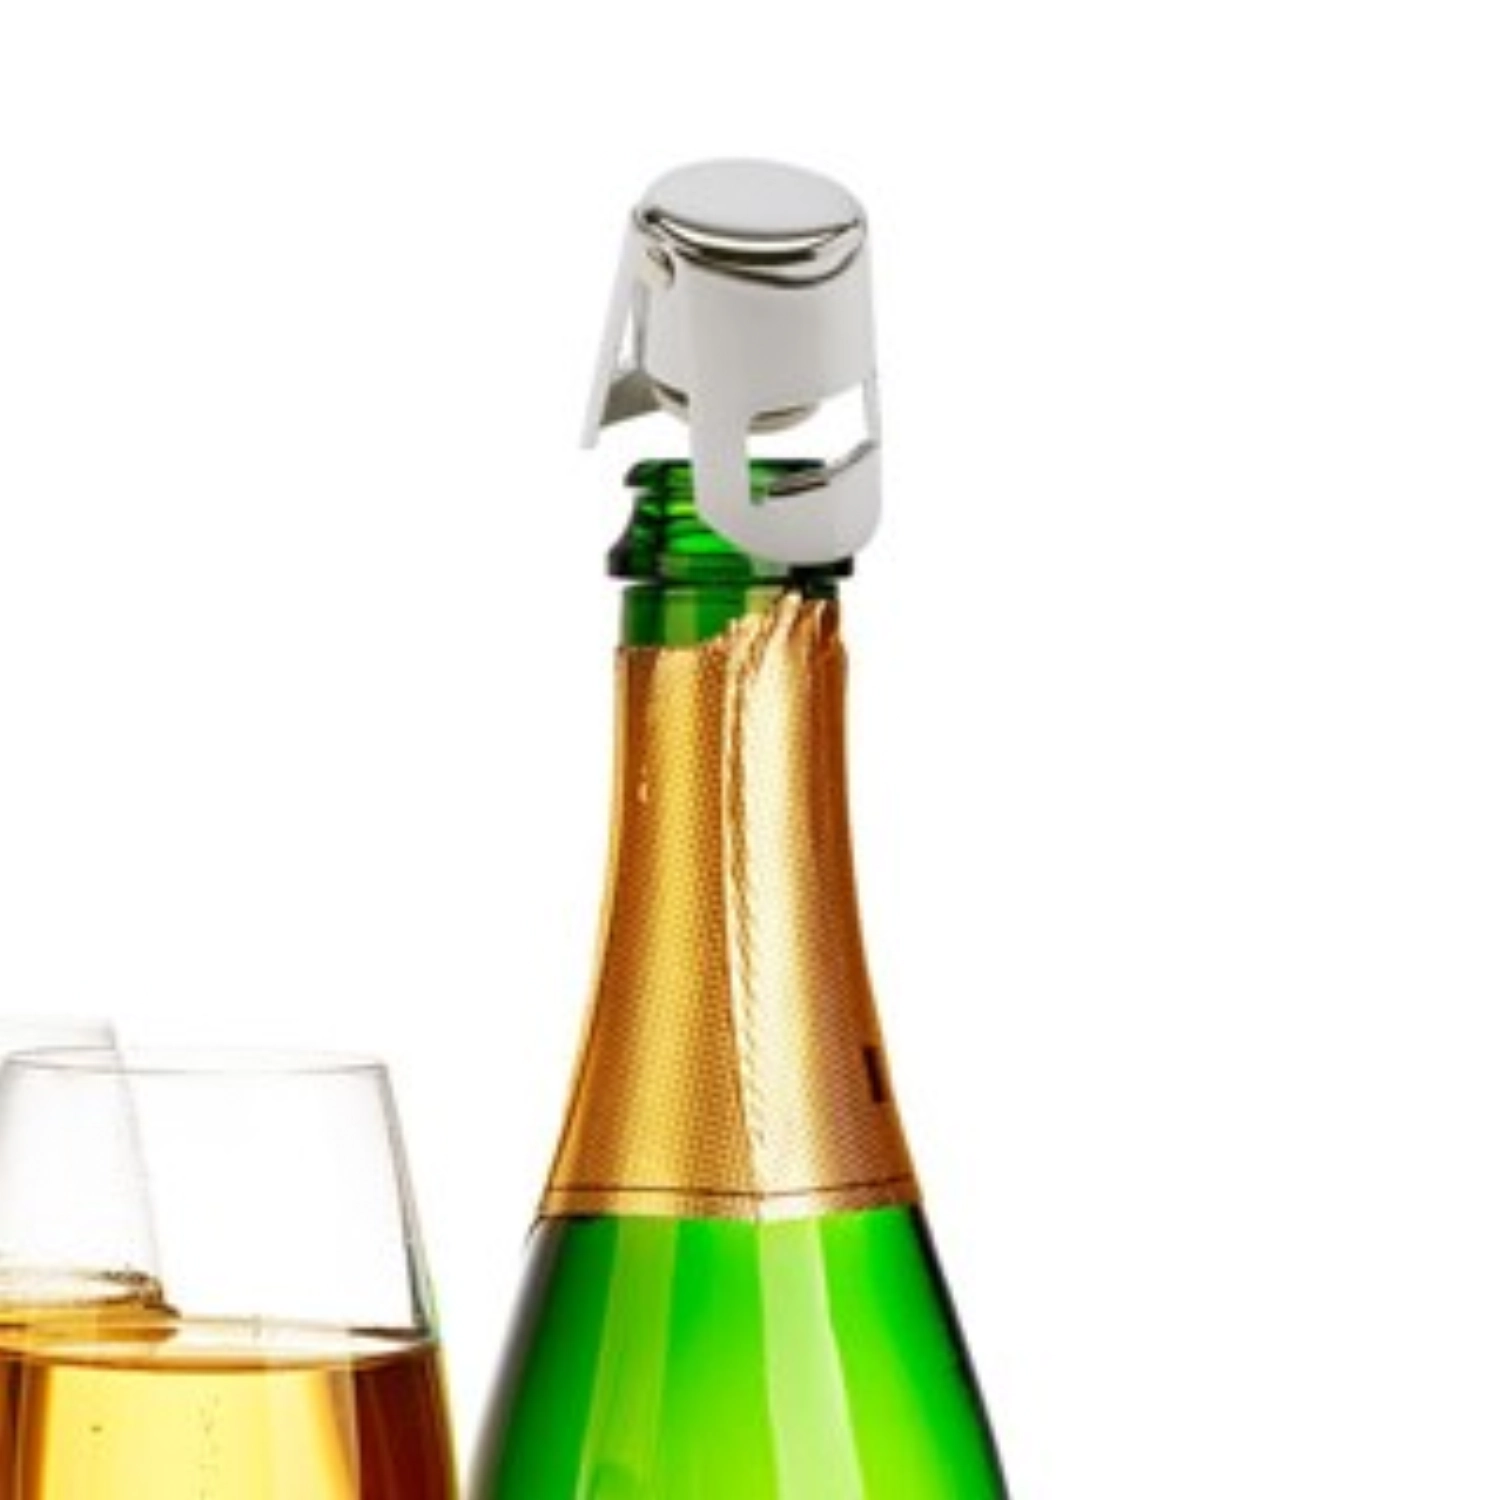 Bouchon pour bouteille de champagne, 4x4x5.2cm